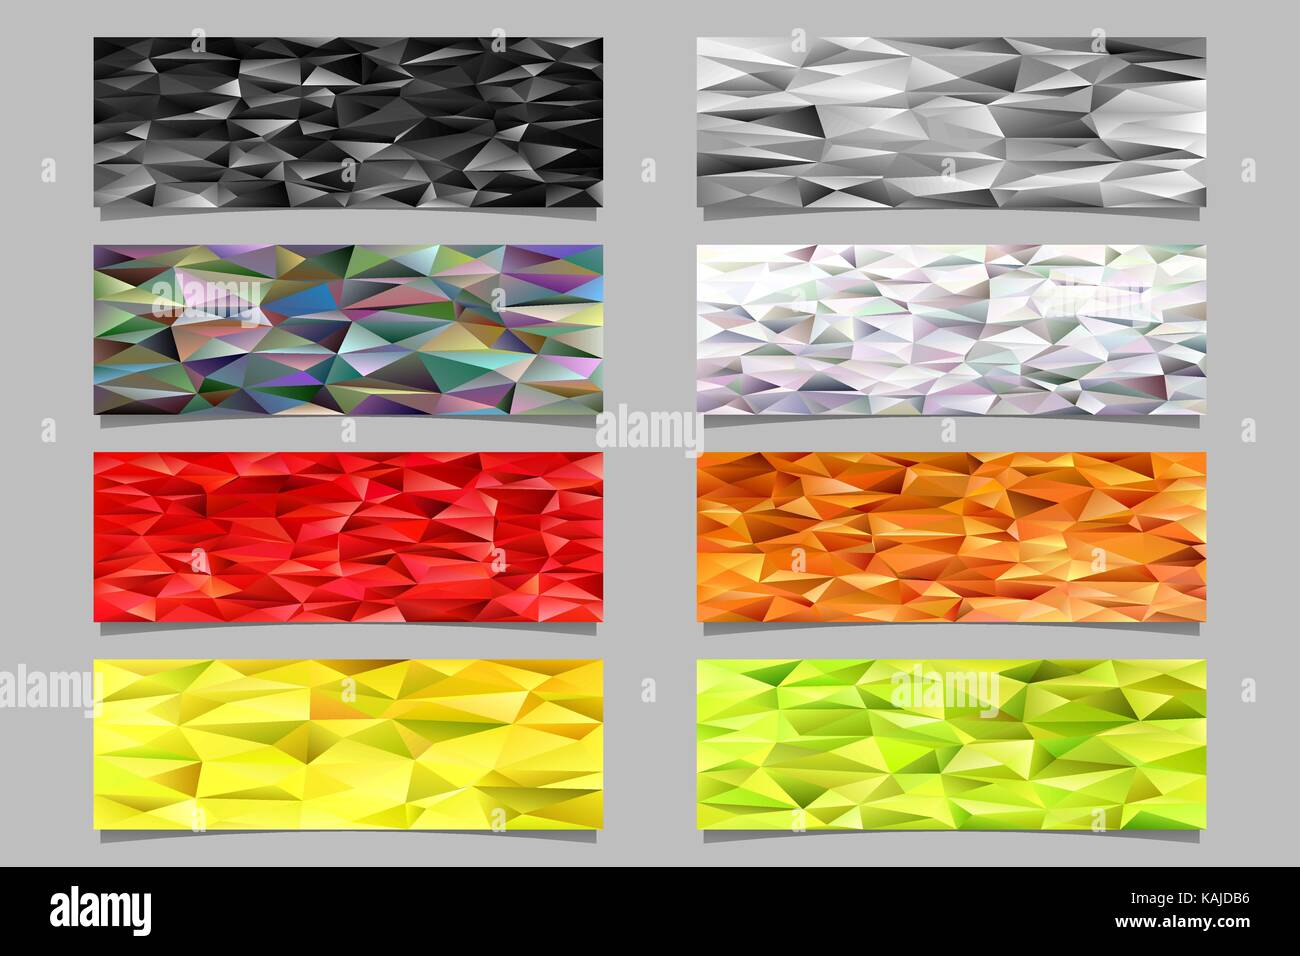 Abstrakte dreieckige polygon Muster Mosaik banner Vorlage Hintergrund - Vektorgrafiken aus farbigen Dreiecke Stock Vektor